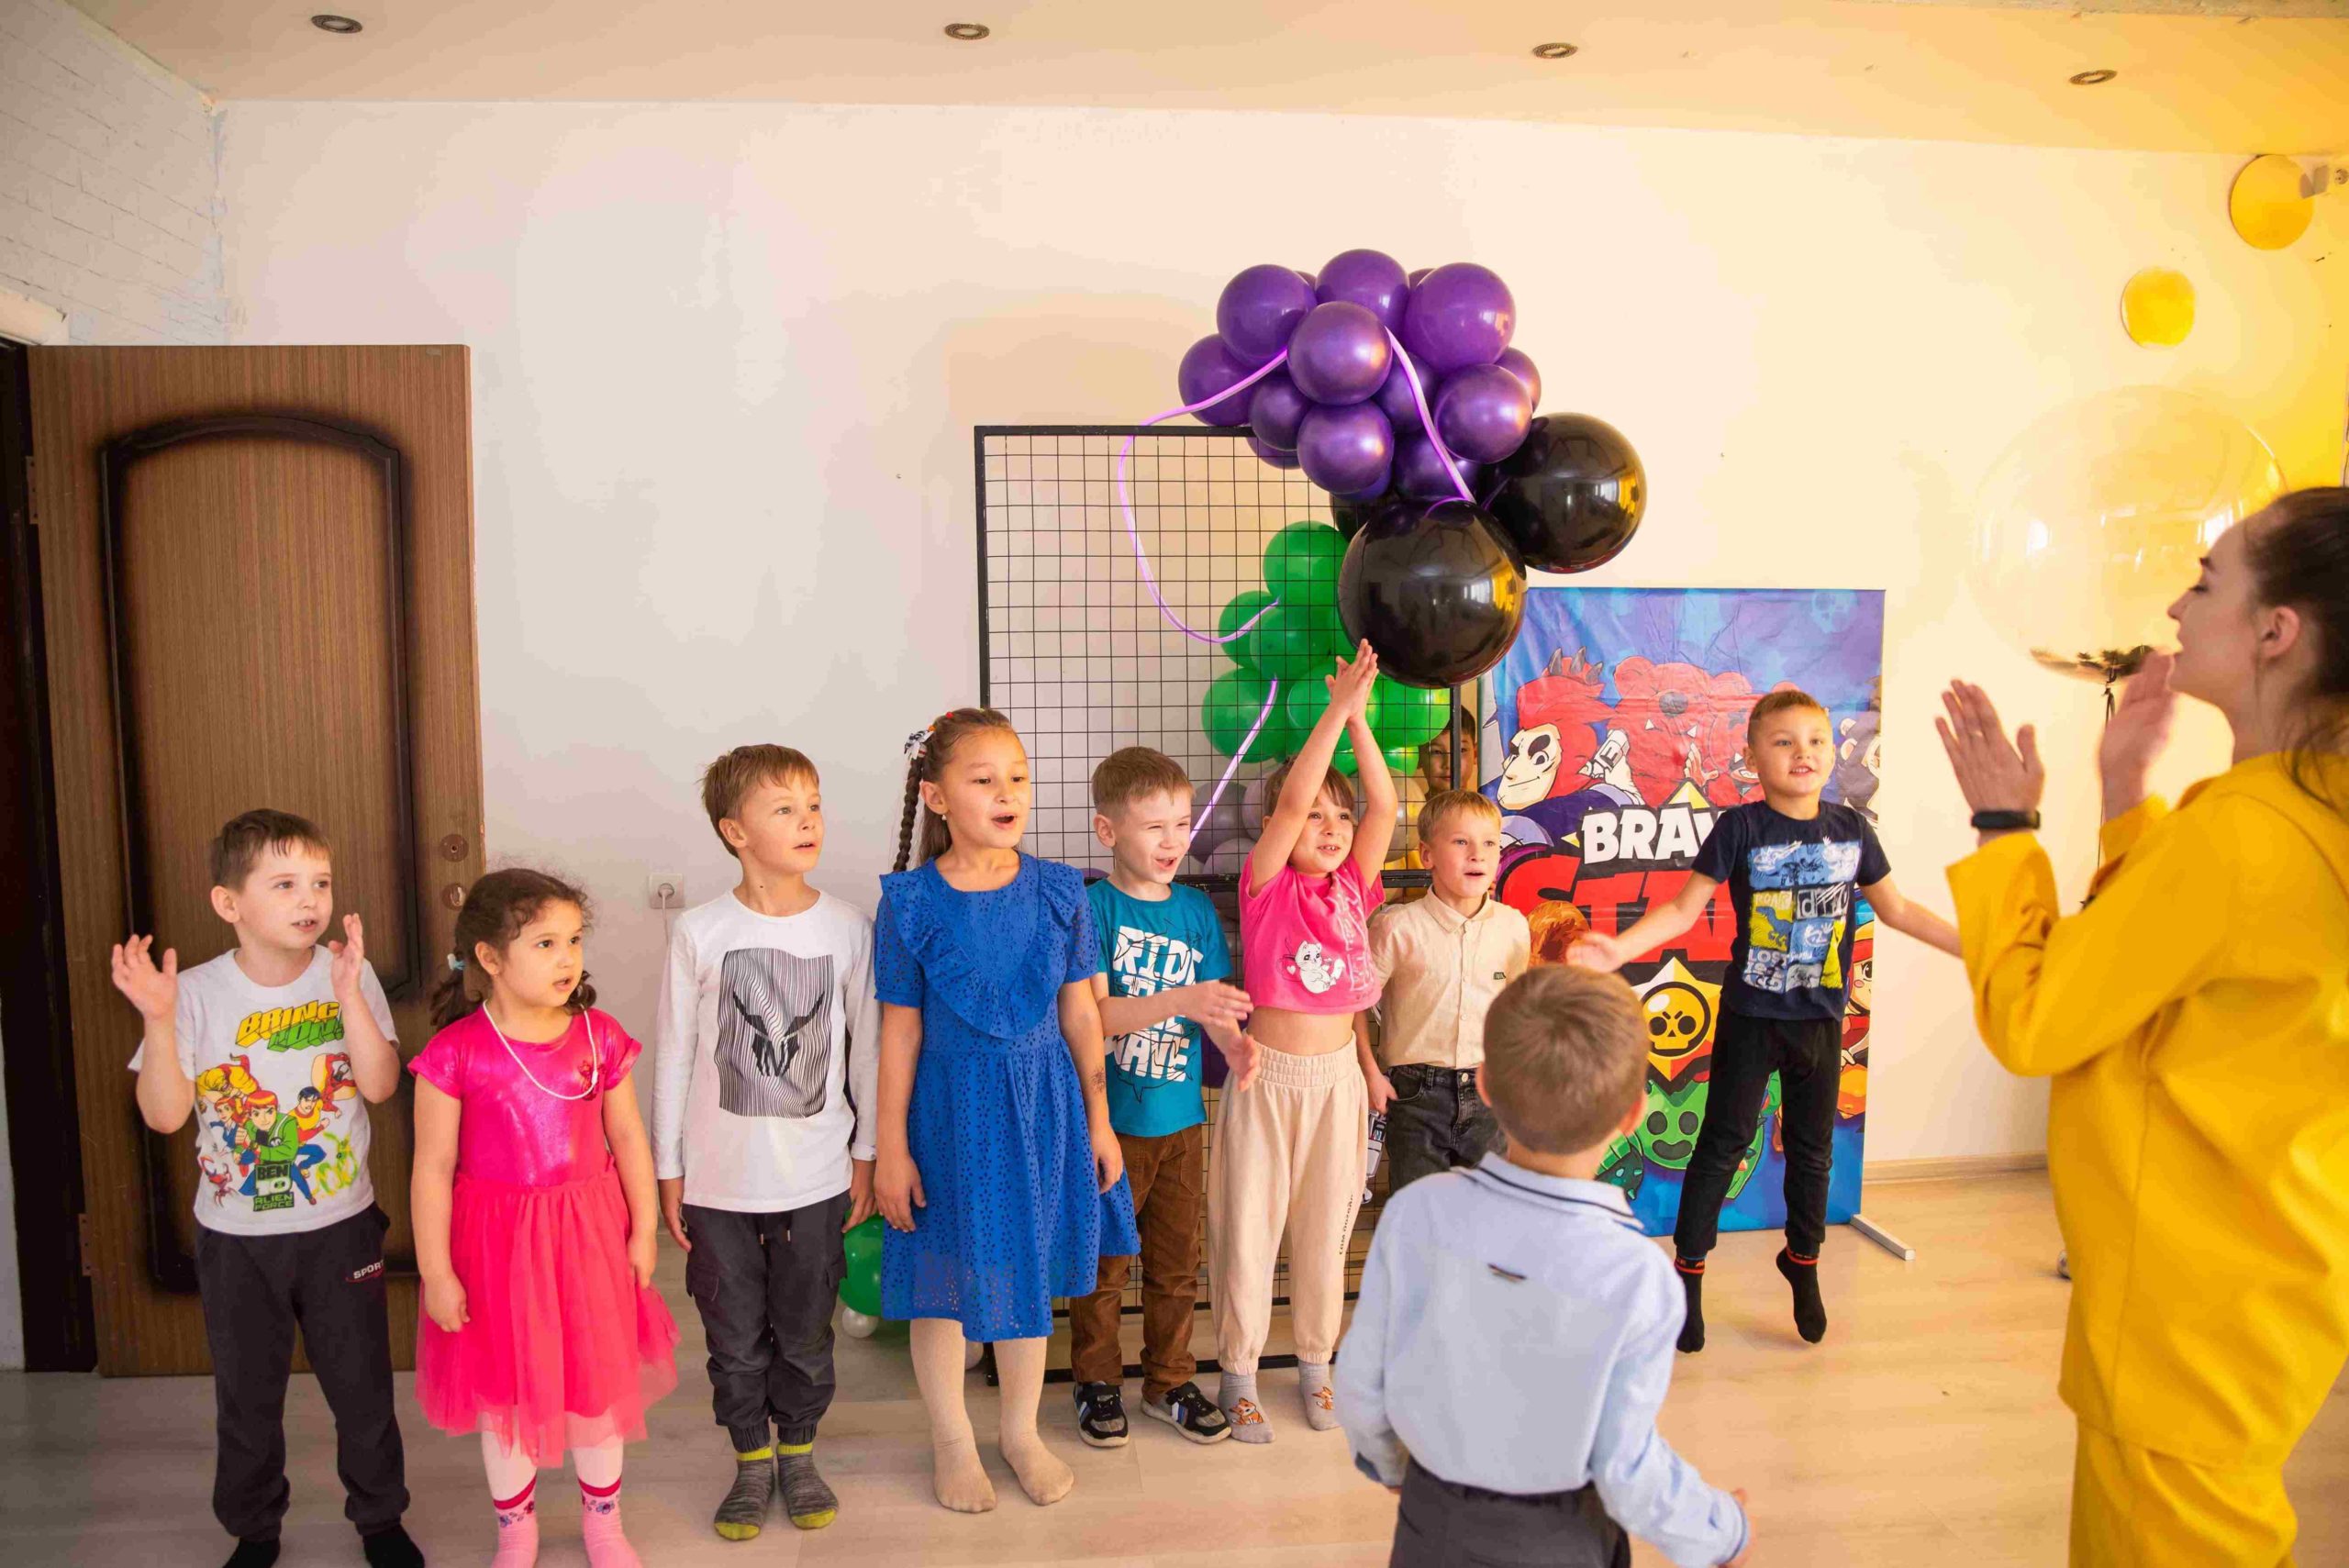 Детская игровая комната "Mamas & Papas" | Crazy Event - Аниматоры в Улан-Удэ